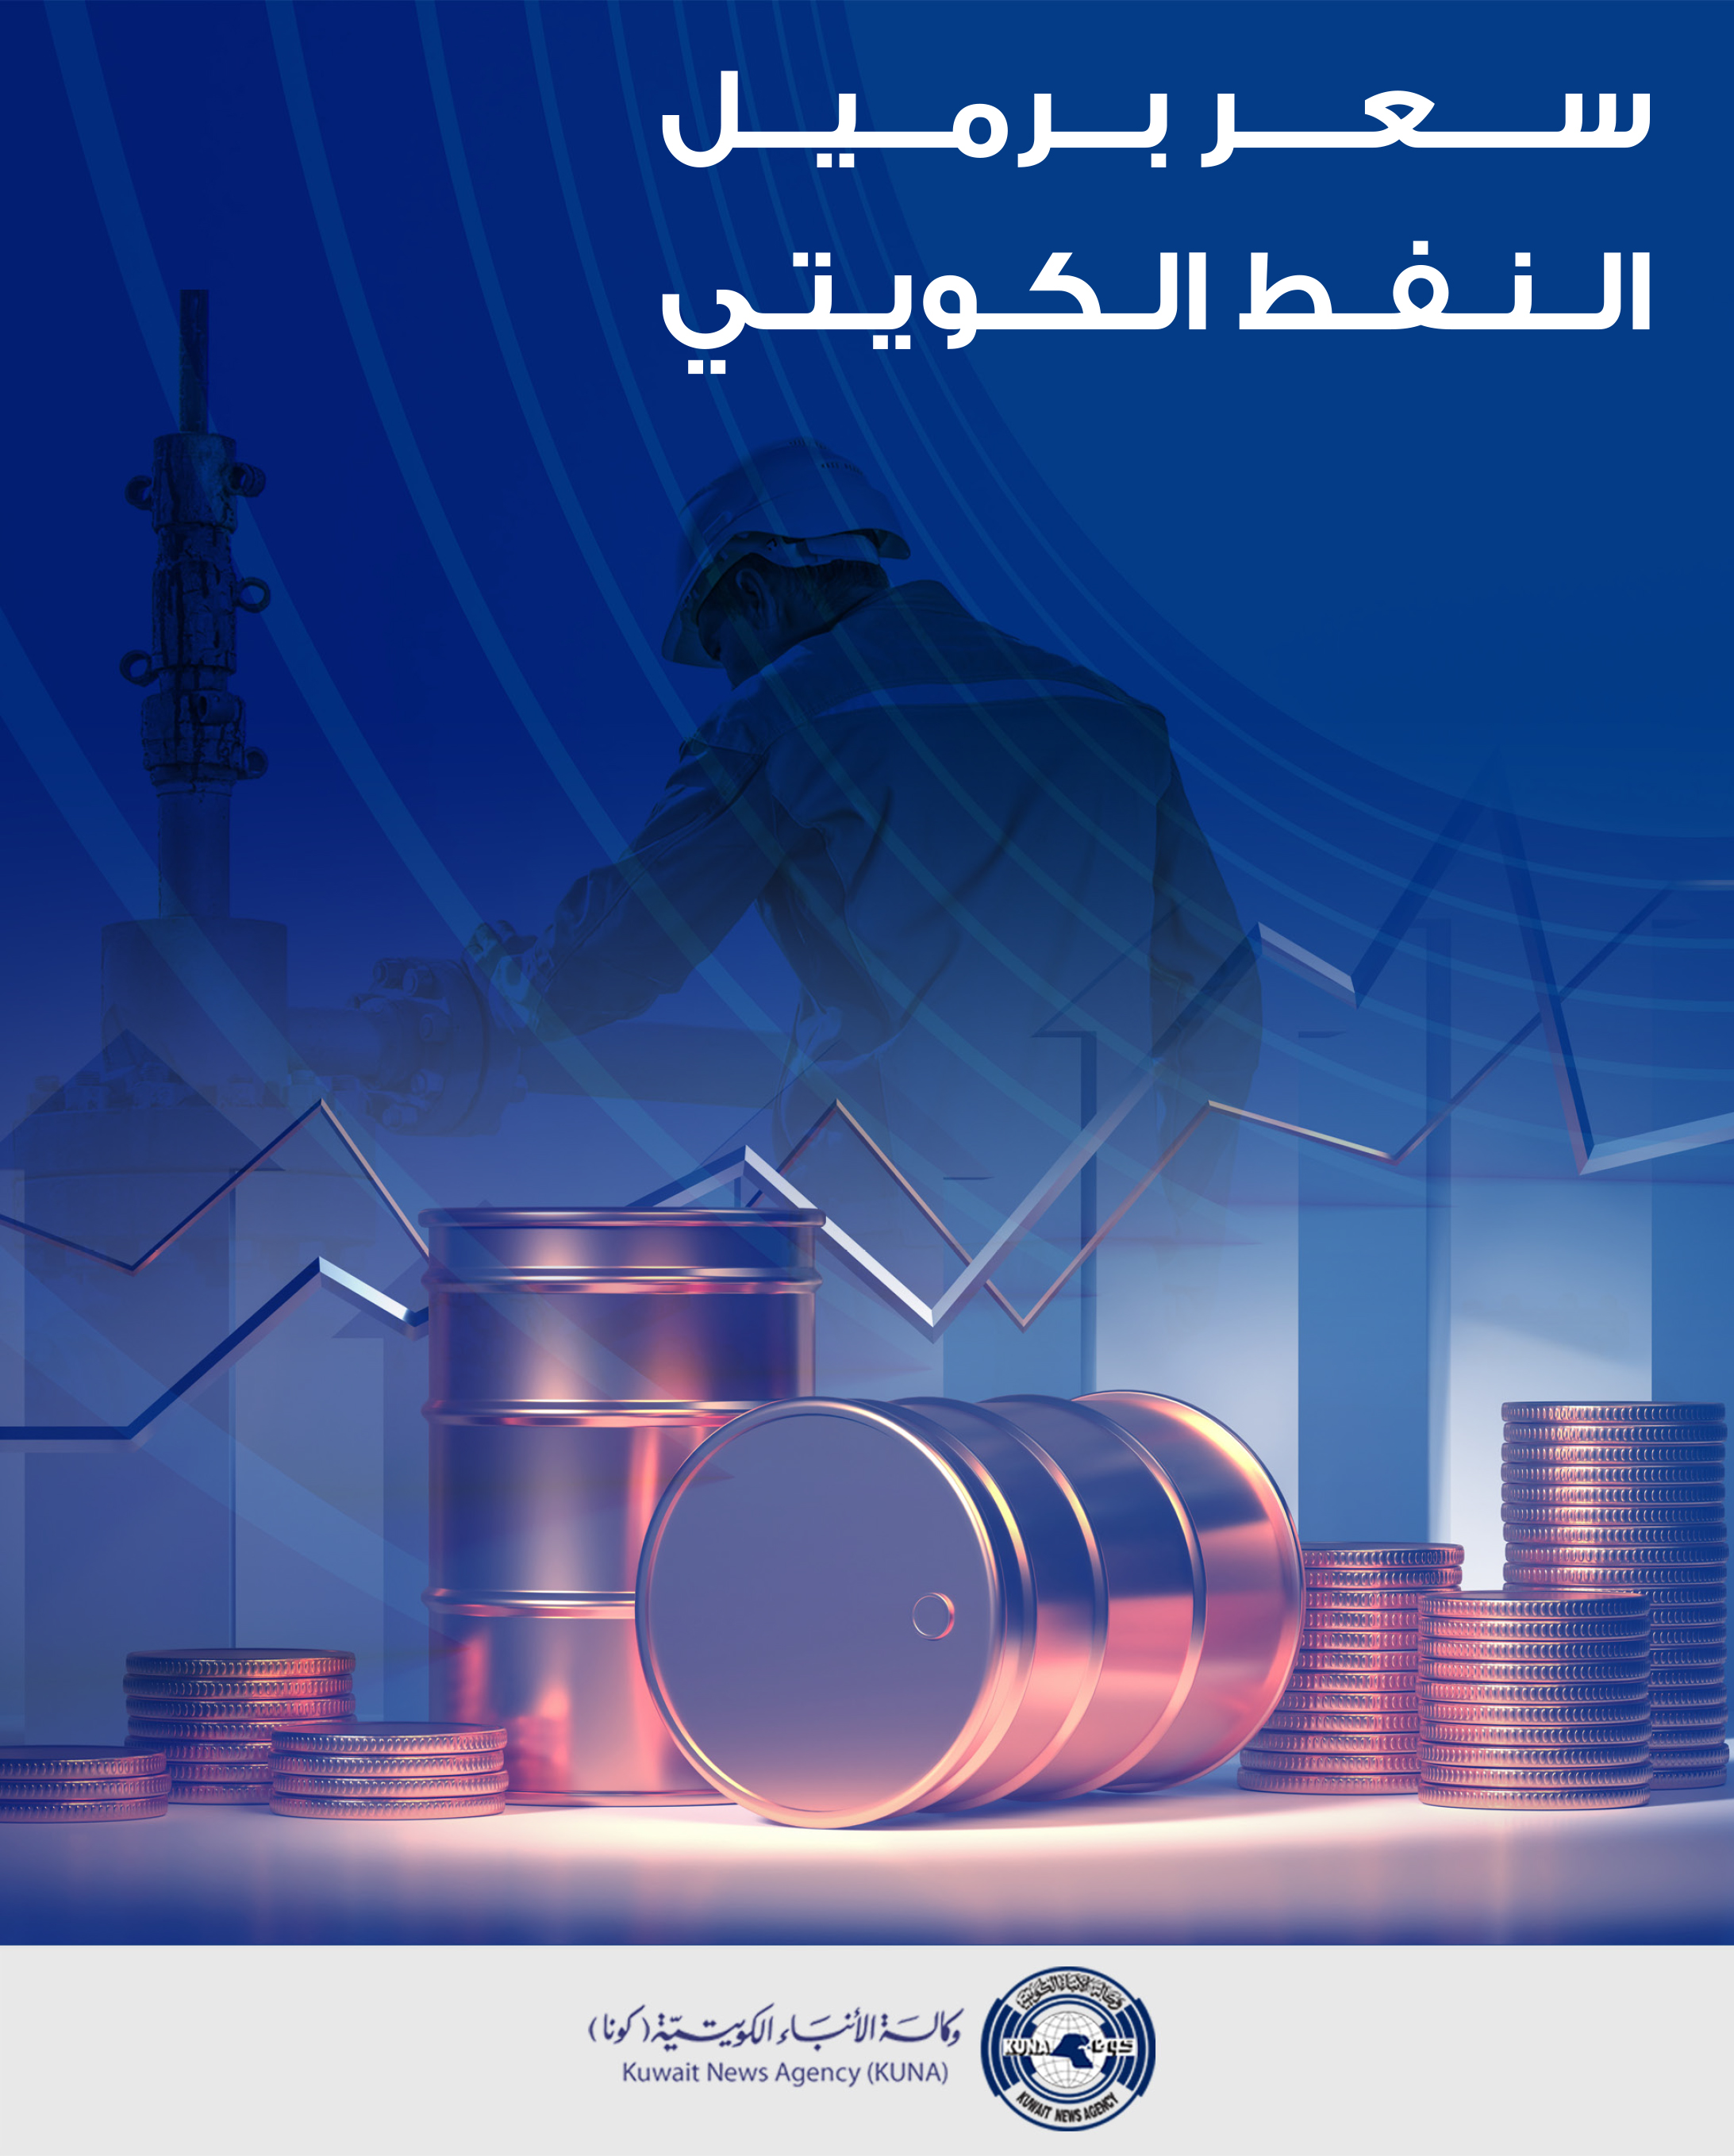 سعر برميل النفط الكويتي ينخفض 51ر1 دولار ليبلغ 47ر84 دولار                                                                                                                                                                                                